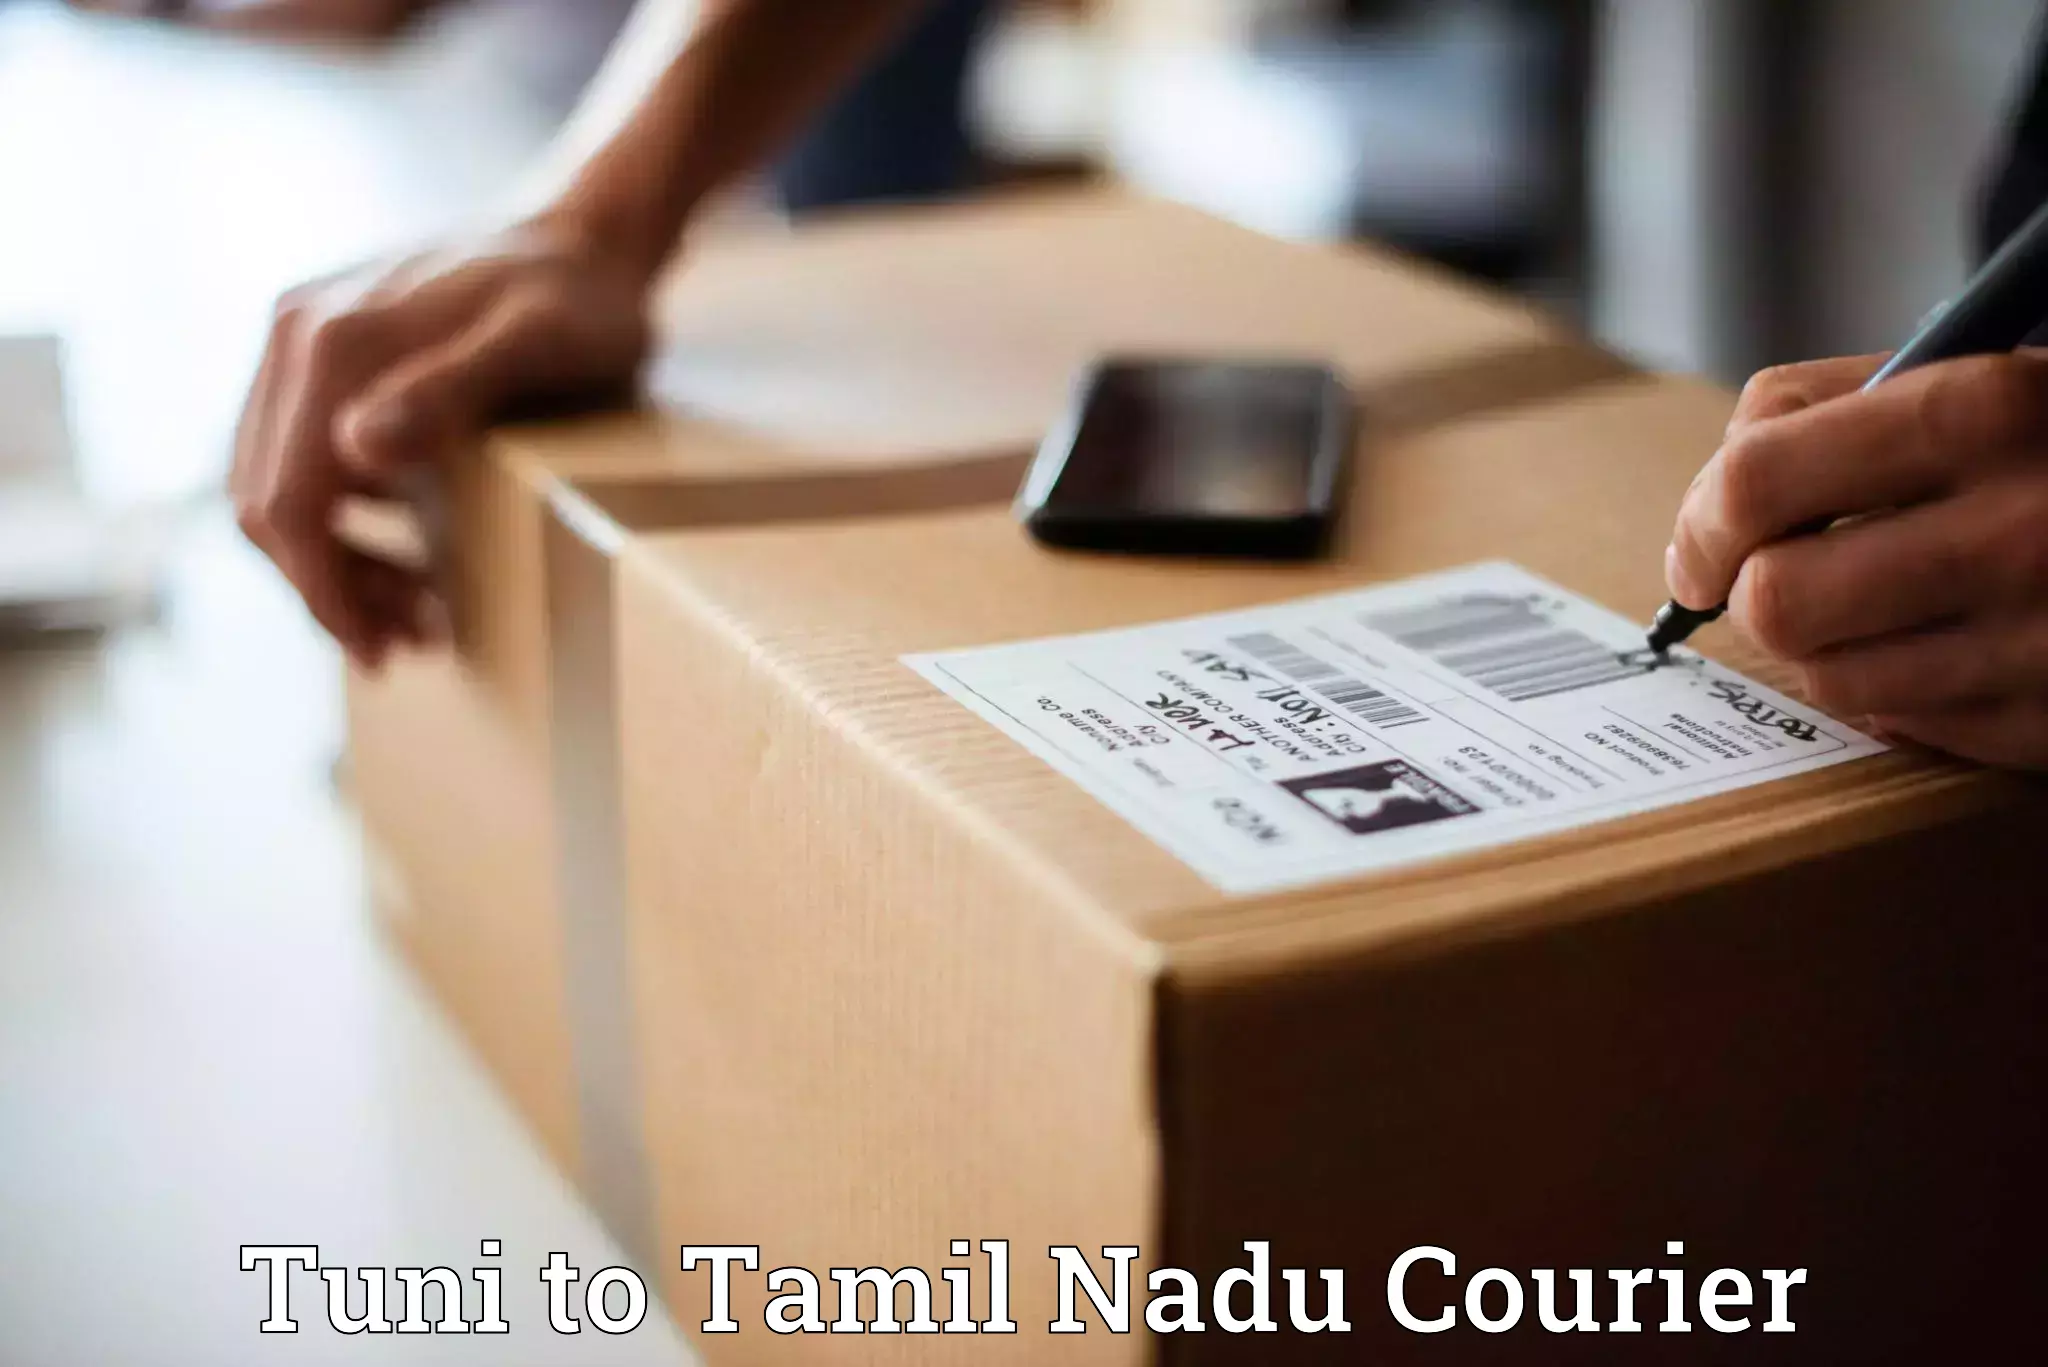 Nationwide shipping capabilities Tuni to Thiruvarur